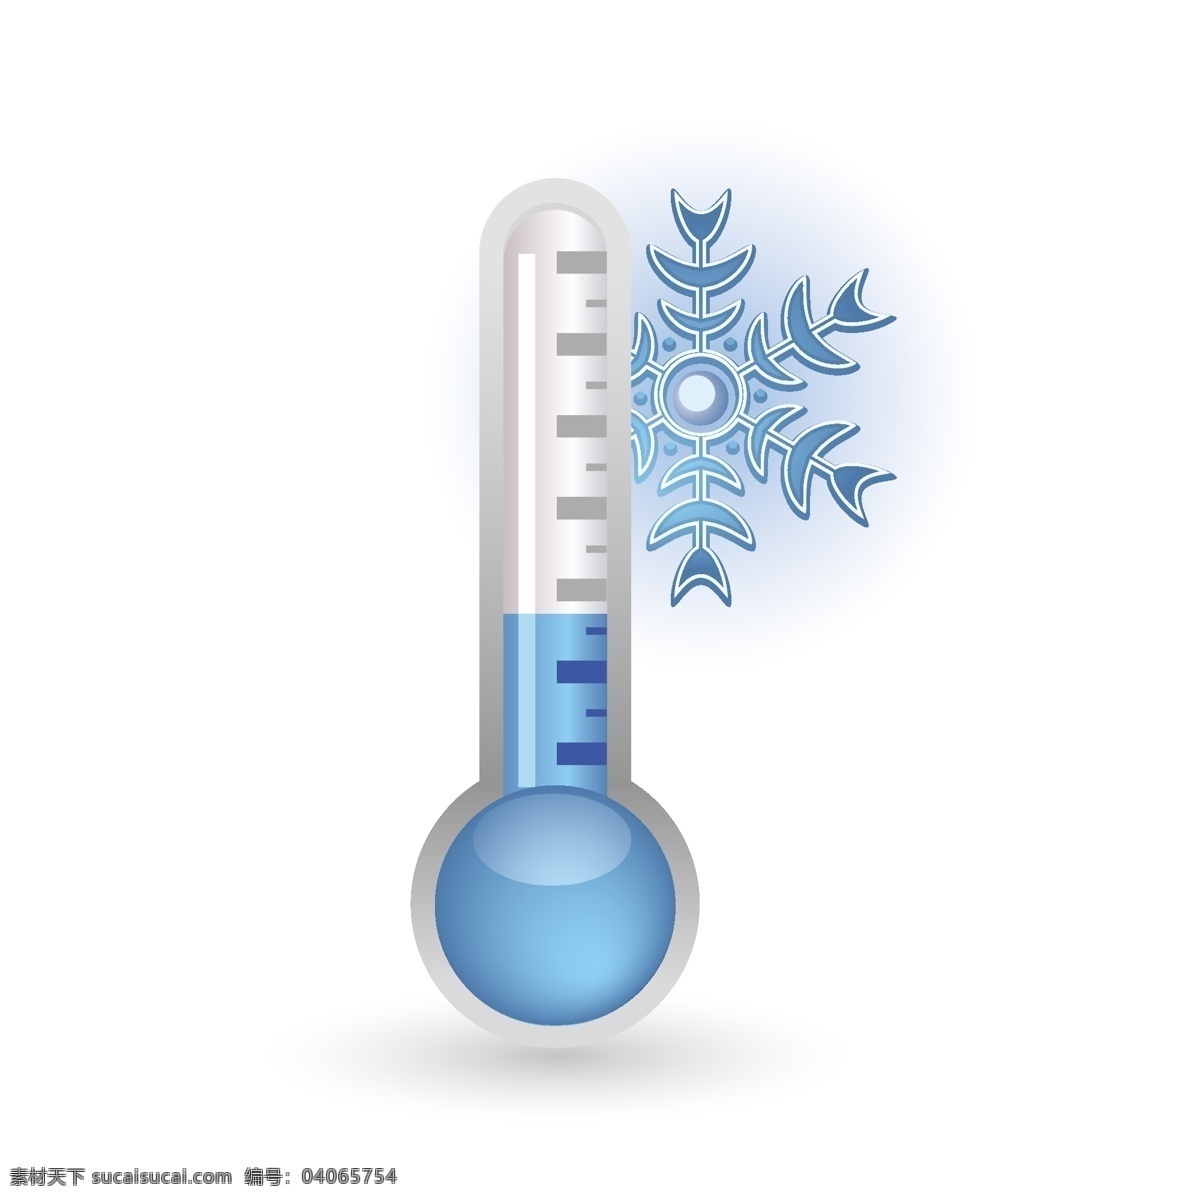 冰雪 湿度计 刻度 温度计 雪花 计量 矢量 矢量图 其他矢量图